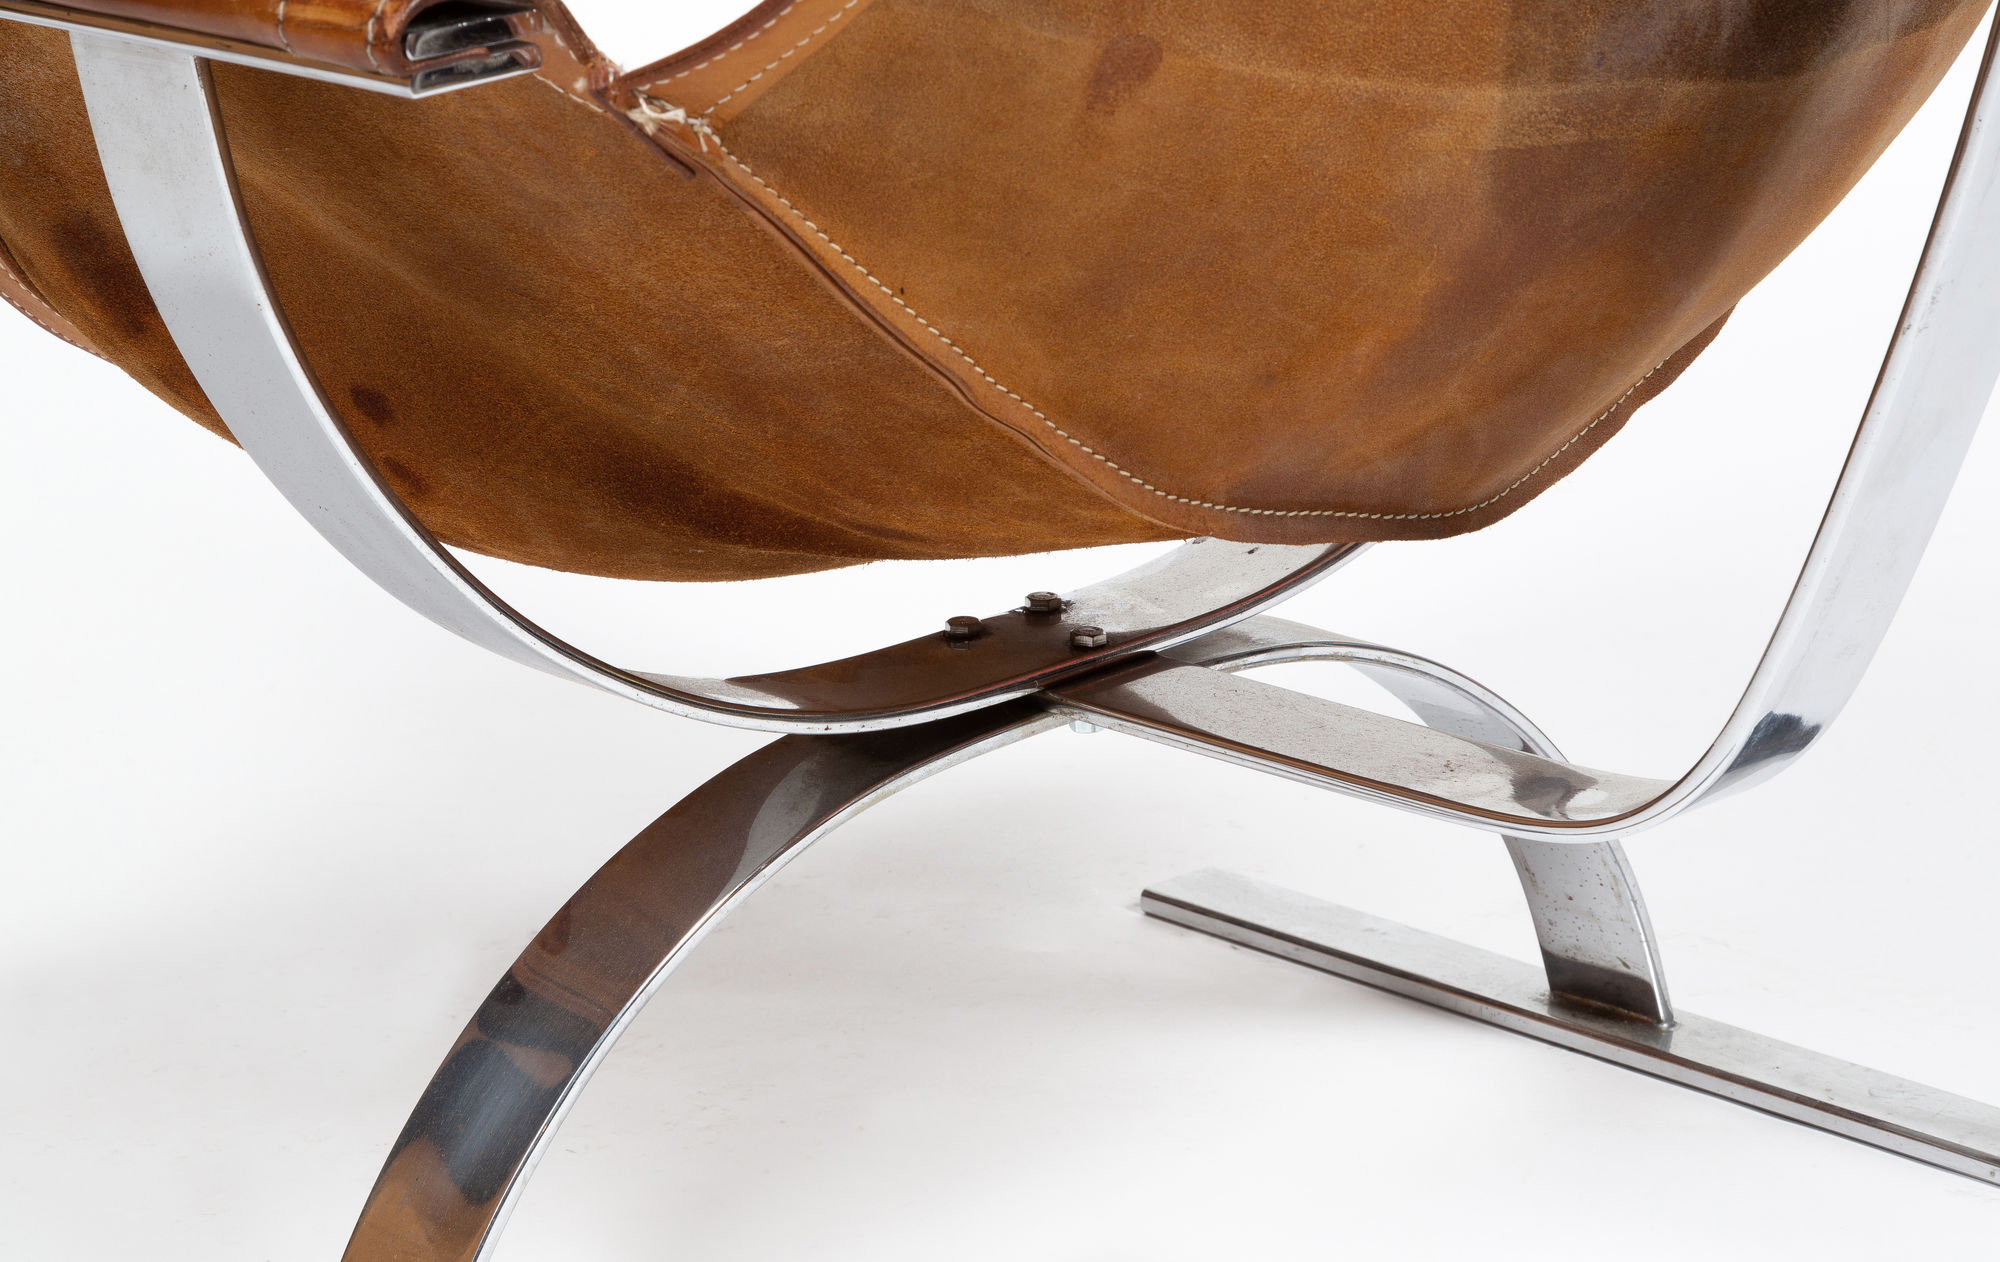 Hans Coray Prototype chairs